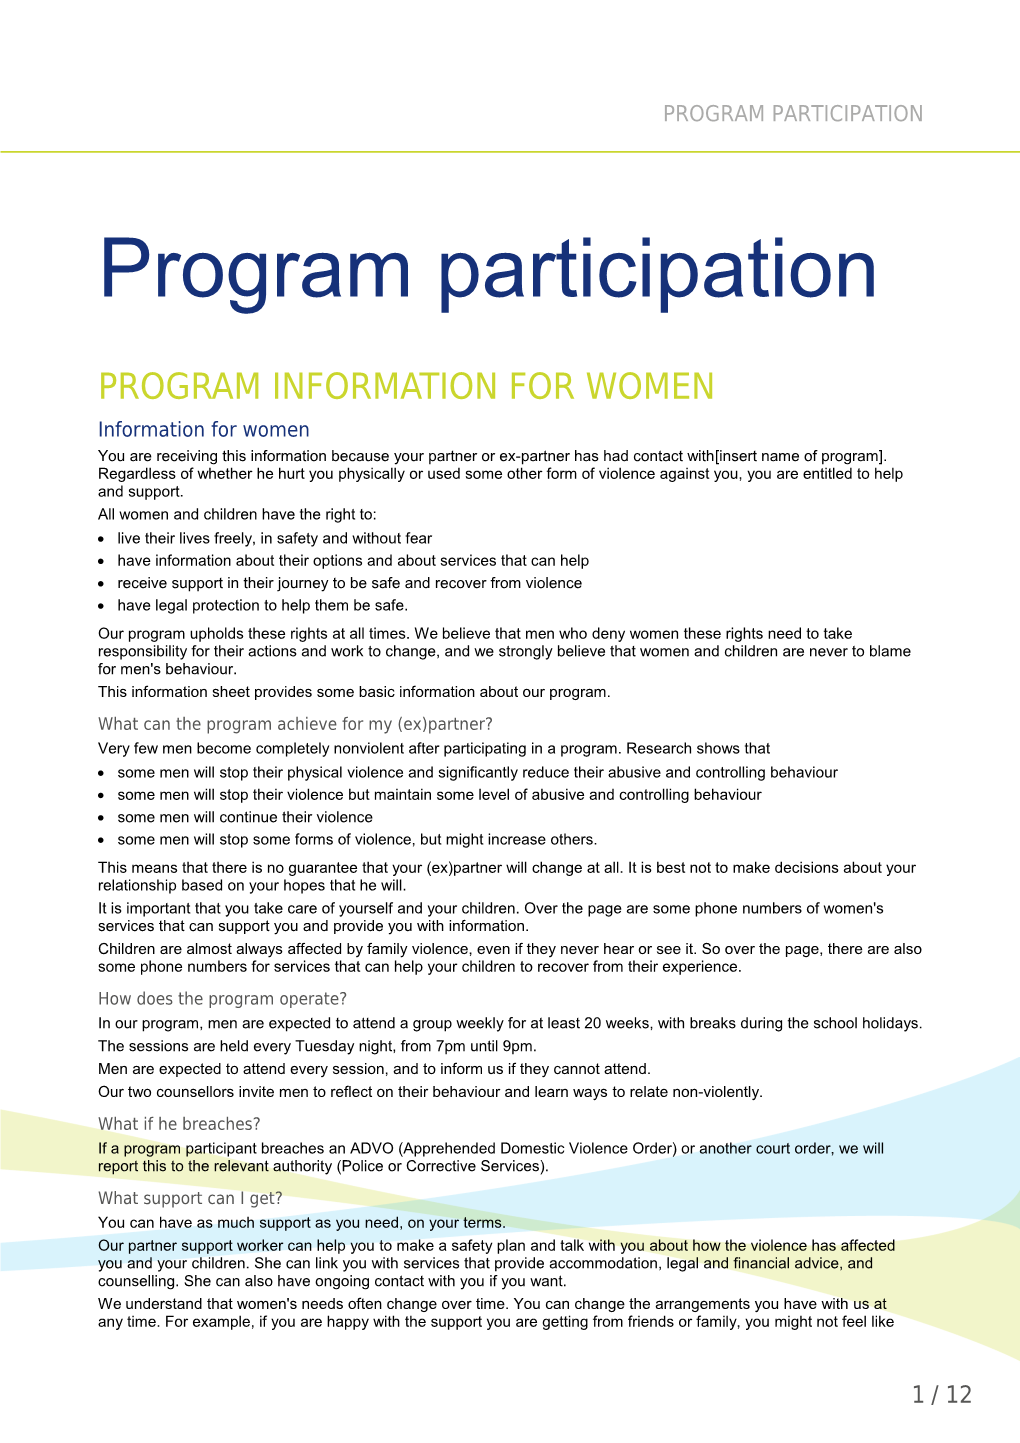 Program Information for Women